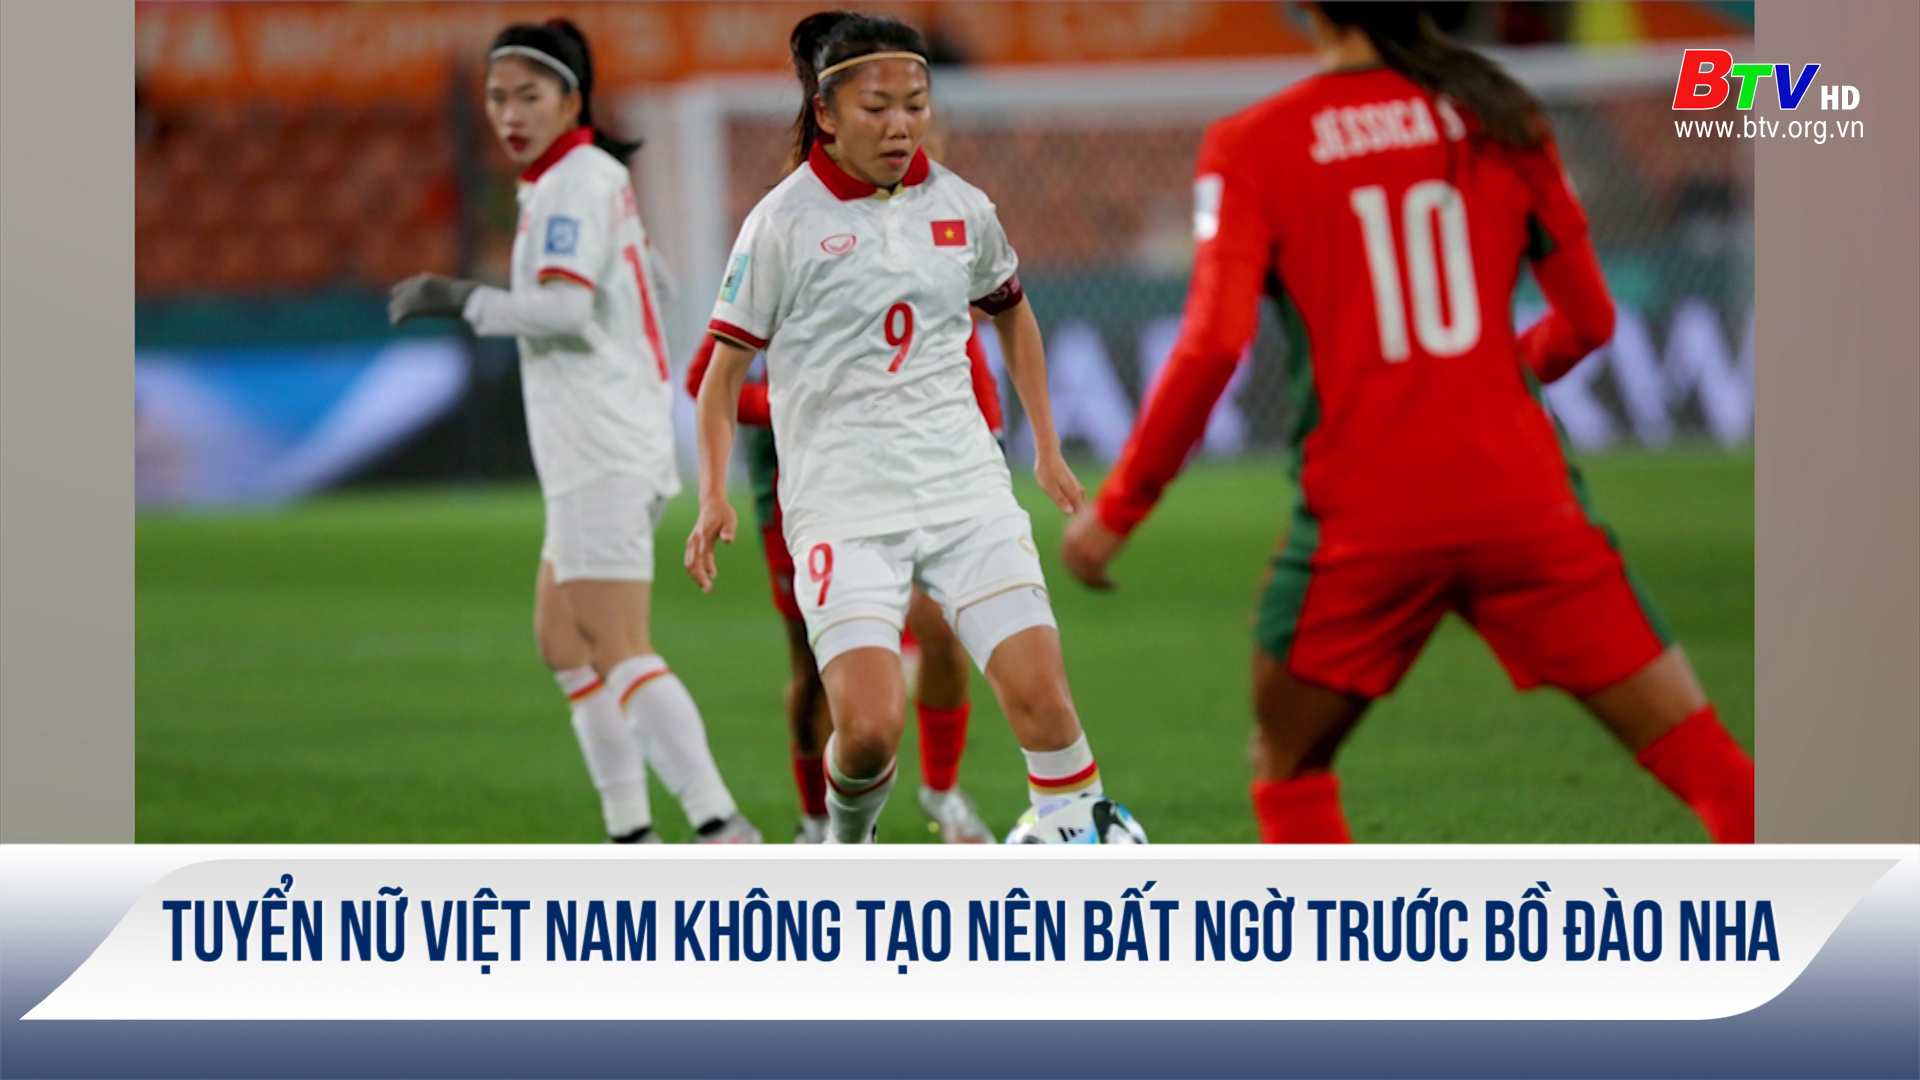 Tuyển nữ Việt Nam không tạo nên bất ngờ trước Bồ Đào Nha